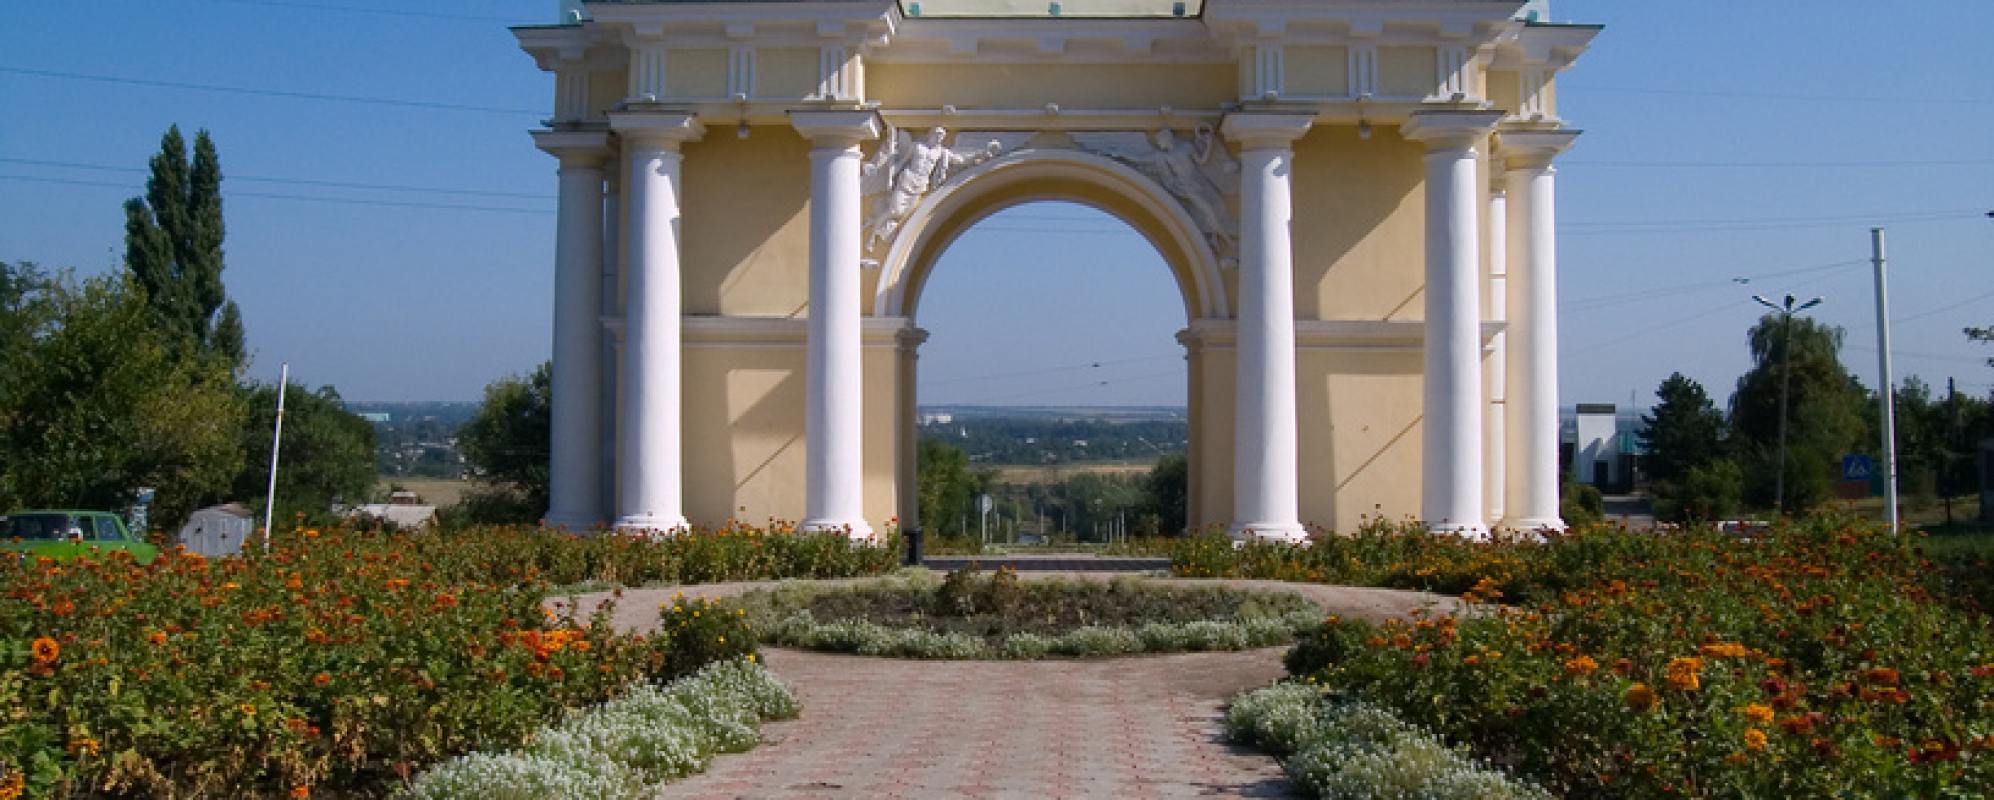 Фотографии памятника архитектуры Триумфальная арка Новочеркасска